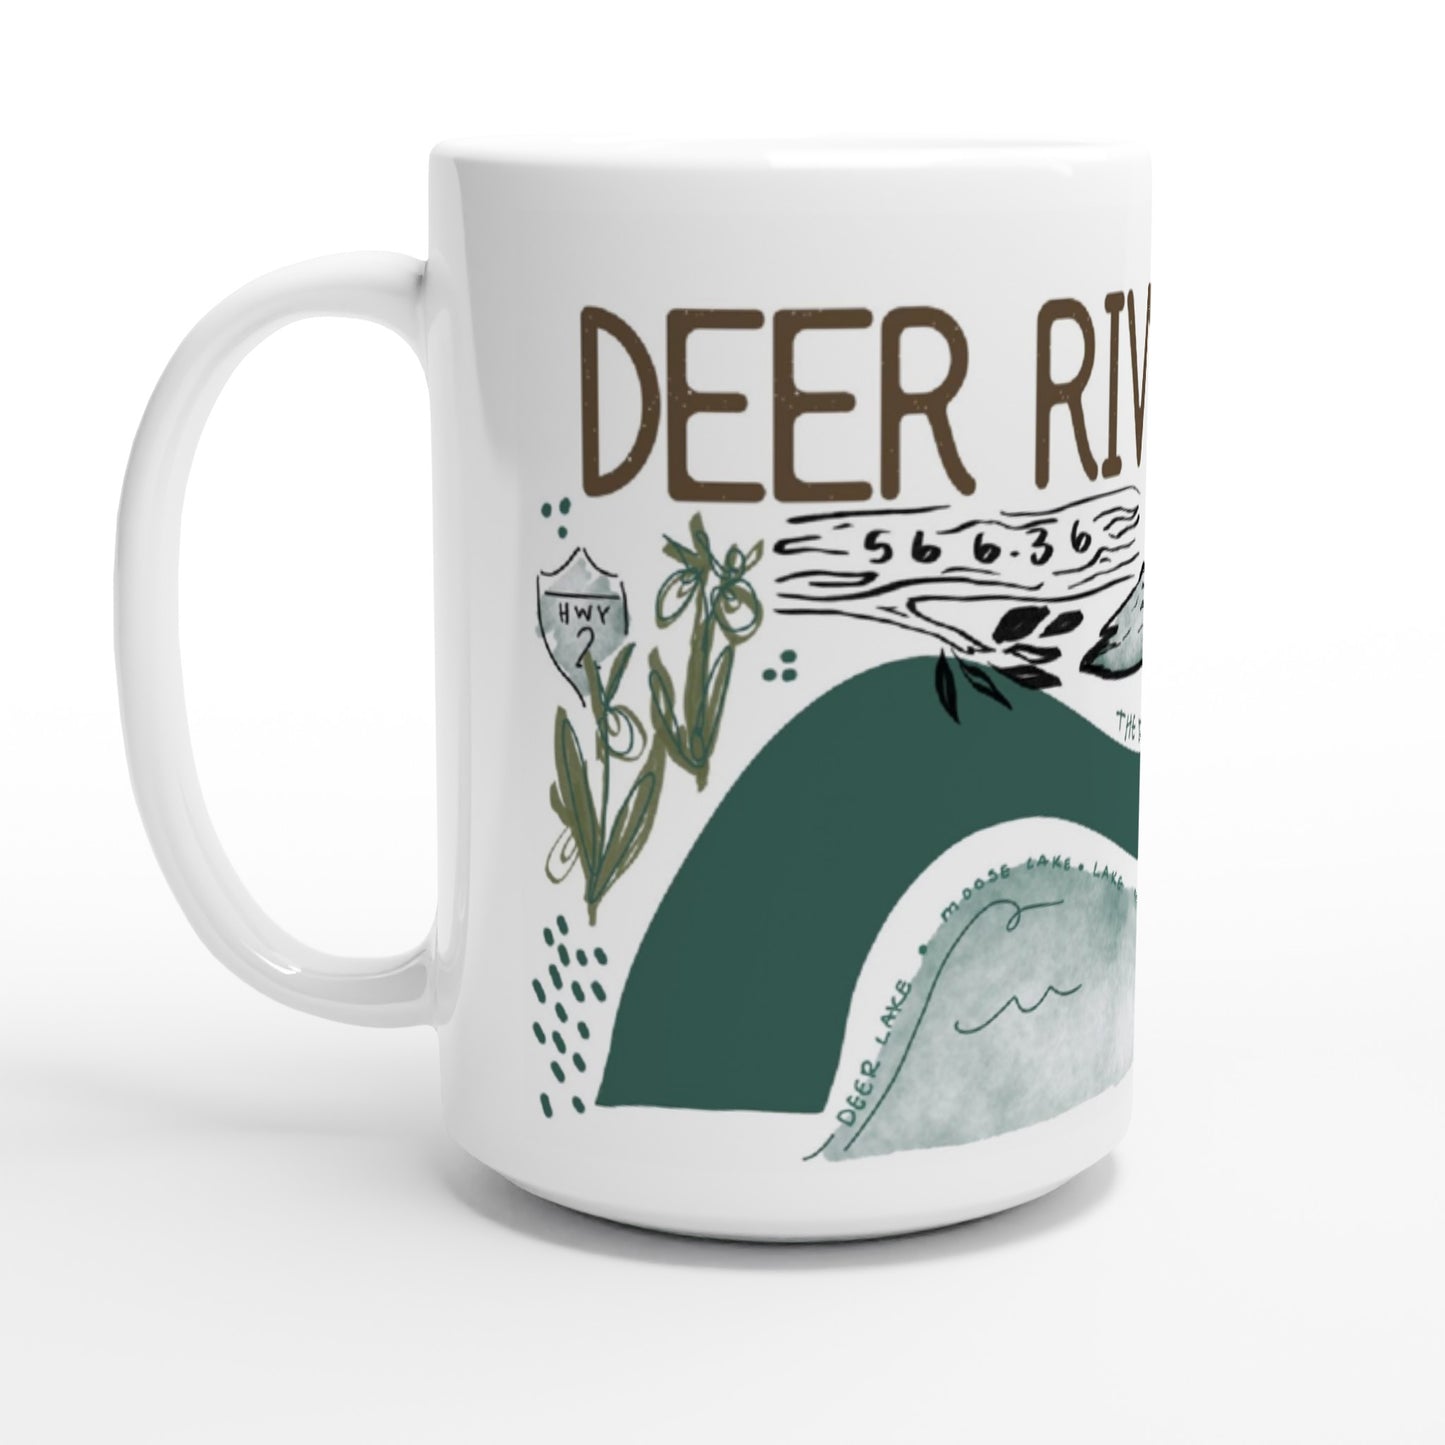 Deer River, MN